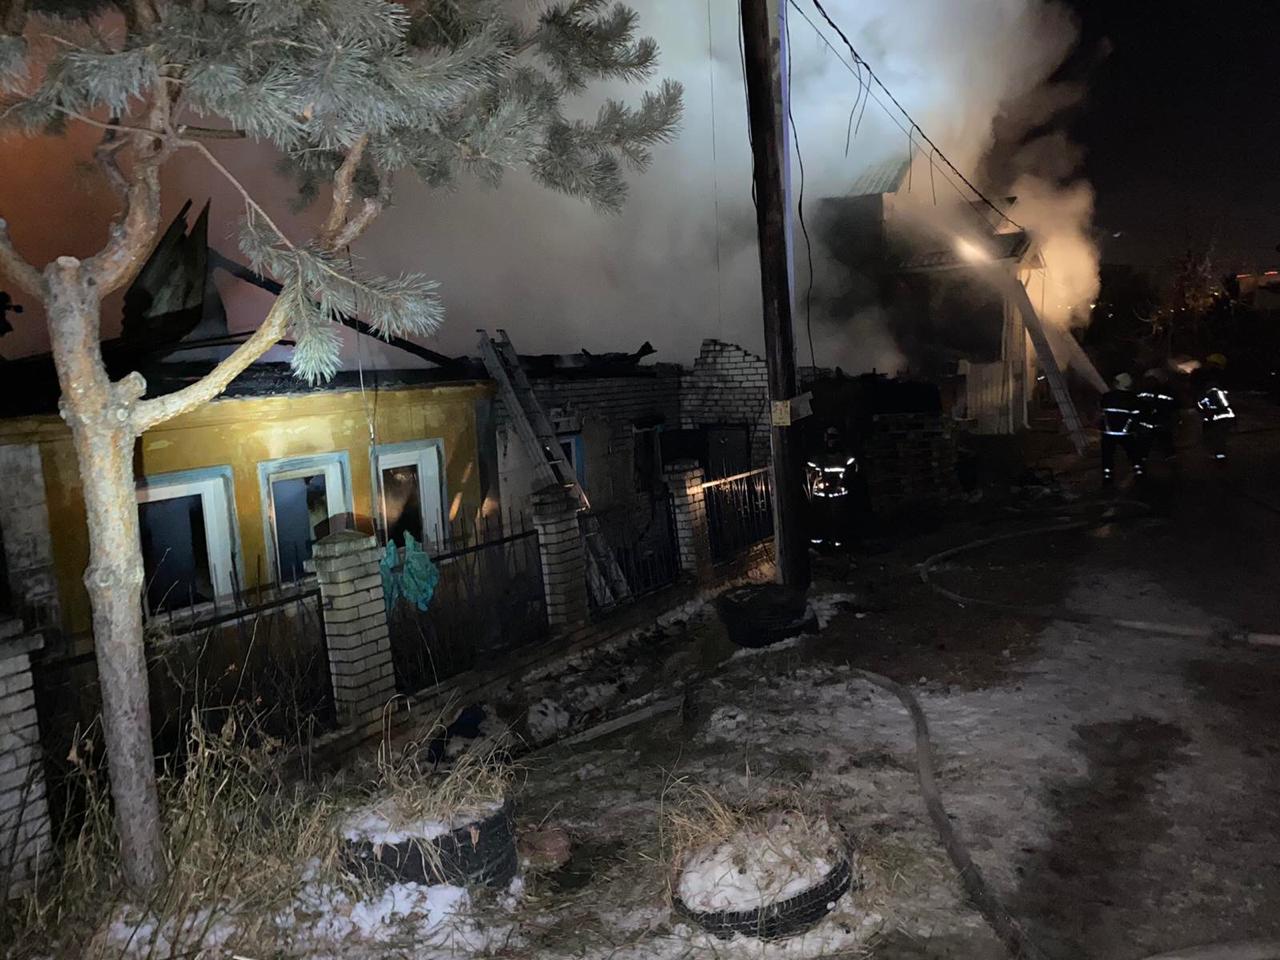 Горят два дома. Пожар в Нижнем Новгороде 5 декабря 2022. Пожар в Нижнем Новгороде сегодня ночью. Ночью сгорел дом. Разрушенный дом ночью.